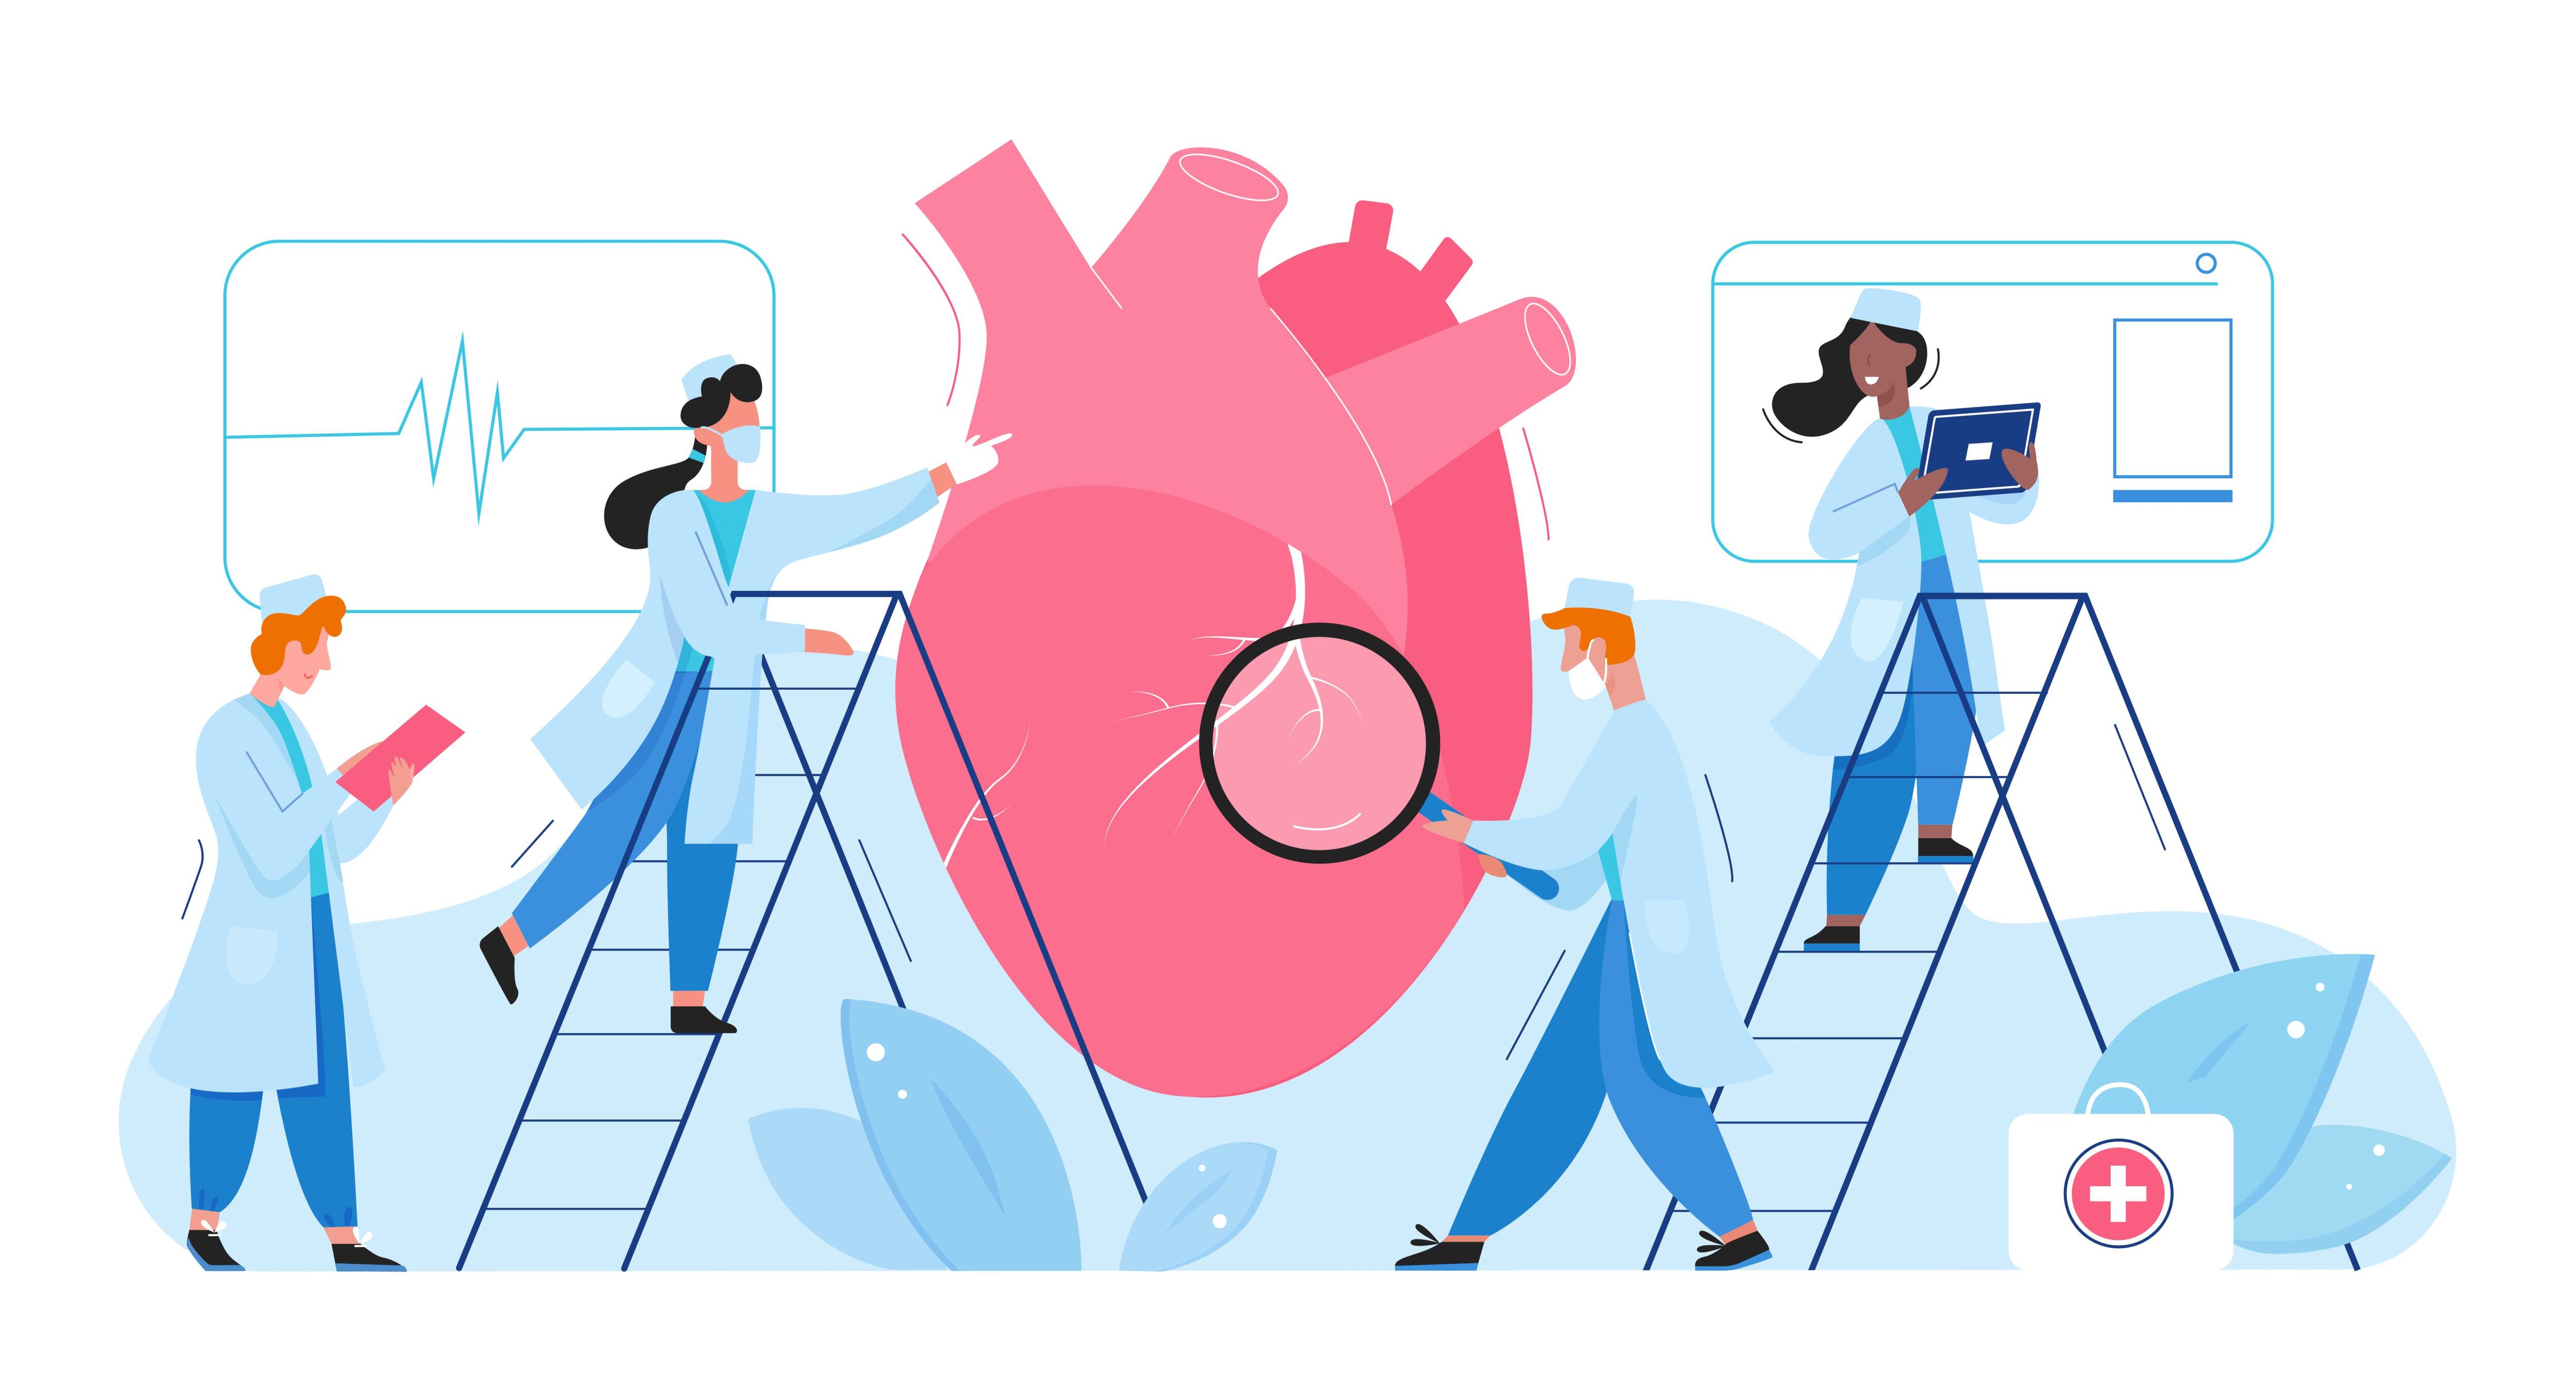 El conocimiento de la salud de nuestro corazón y de sus números nos permitirá saber cómo cuidarlo mejor.

Ilustración: Shutterstock